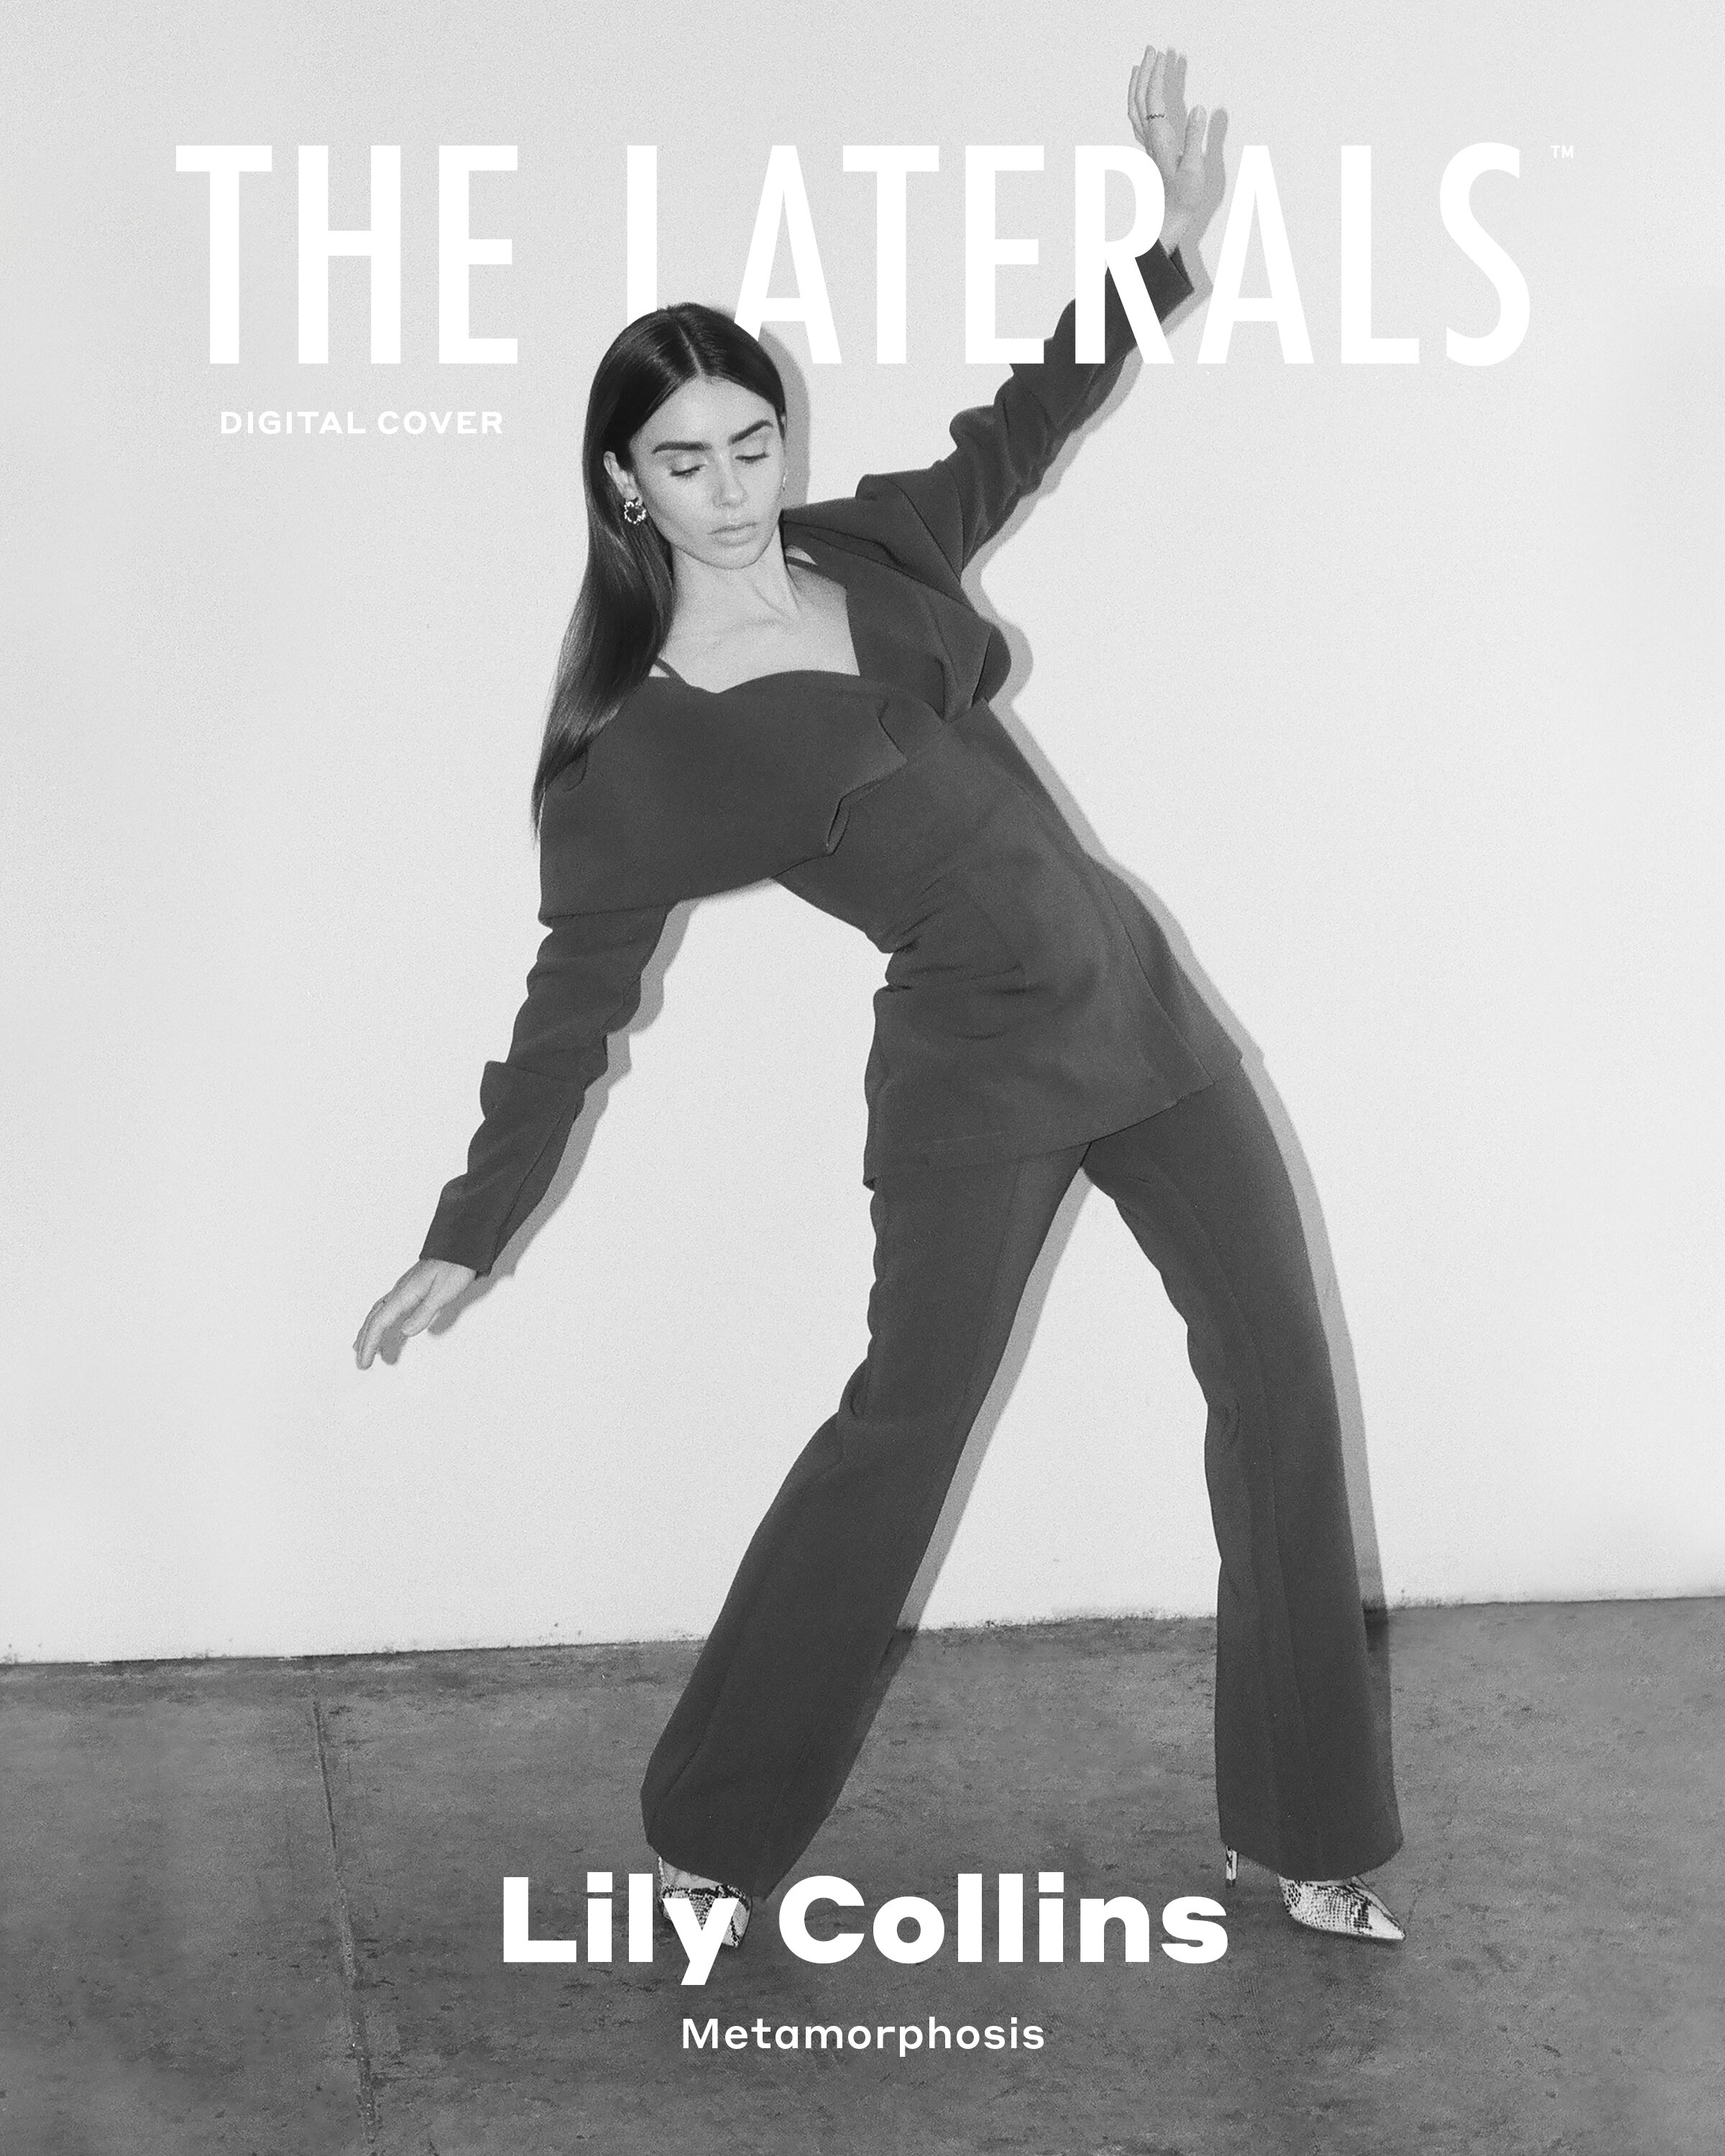 FOTOS Lily Collins la chica de la portada! - Photo 14